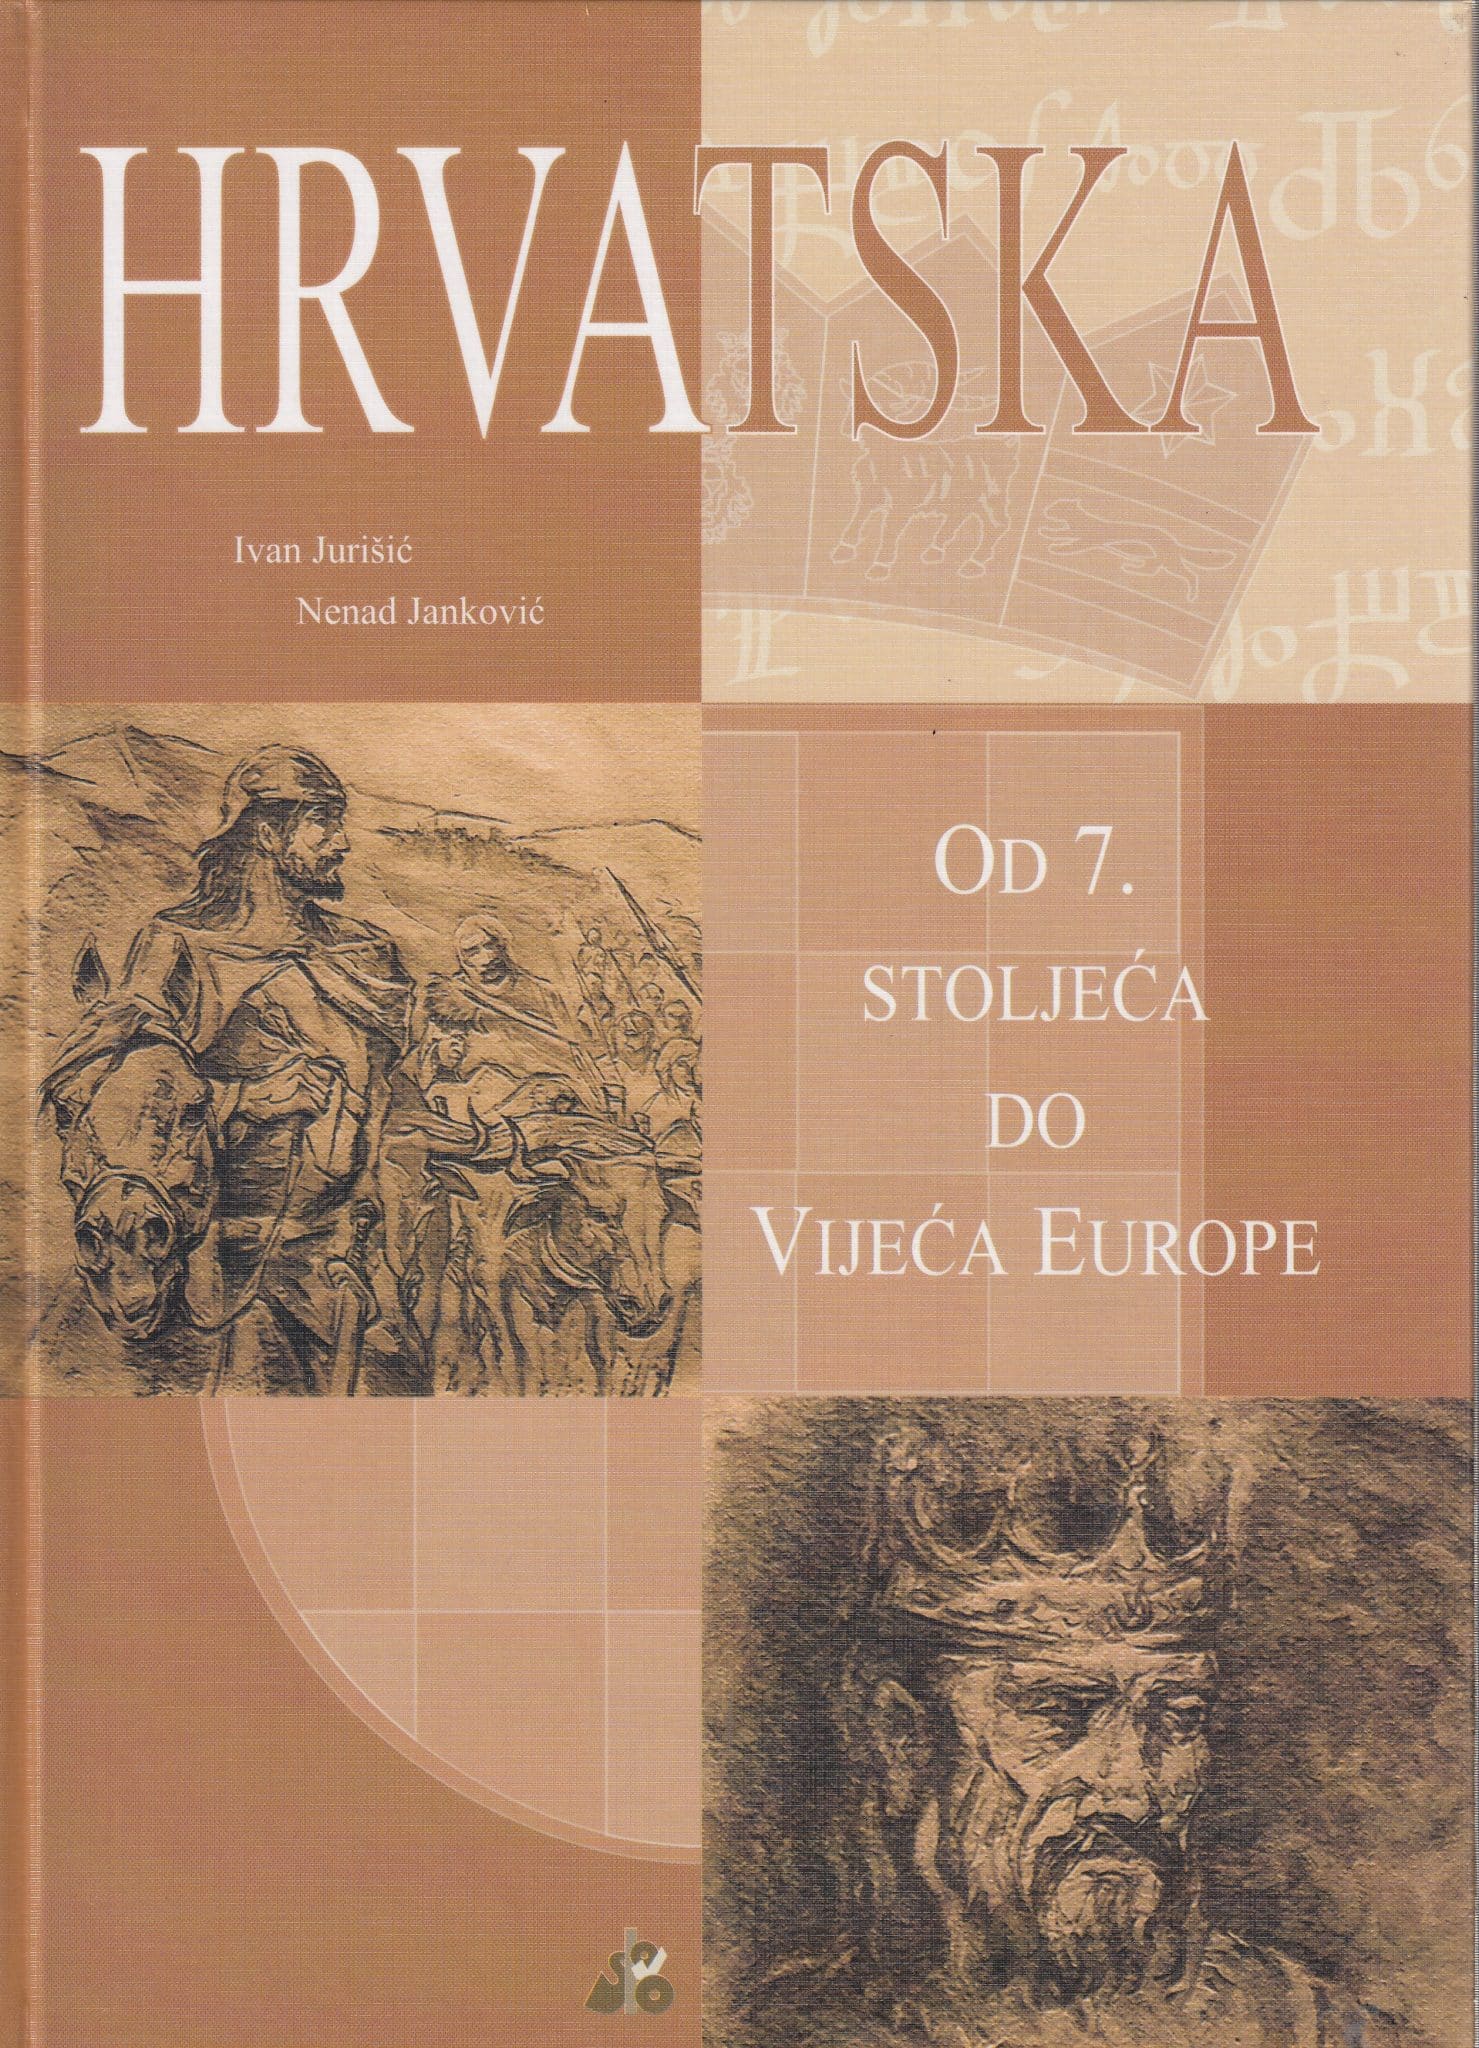 Hrvatska - od 7. stoljeća do Vijeća Europe Ivan Jurišić, Nenad Janković